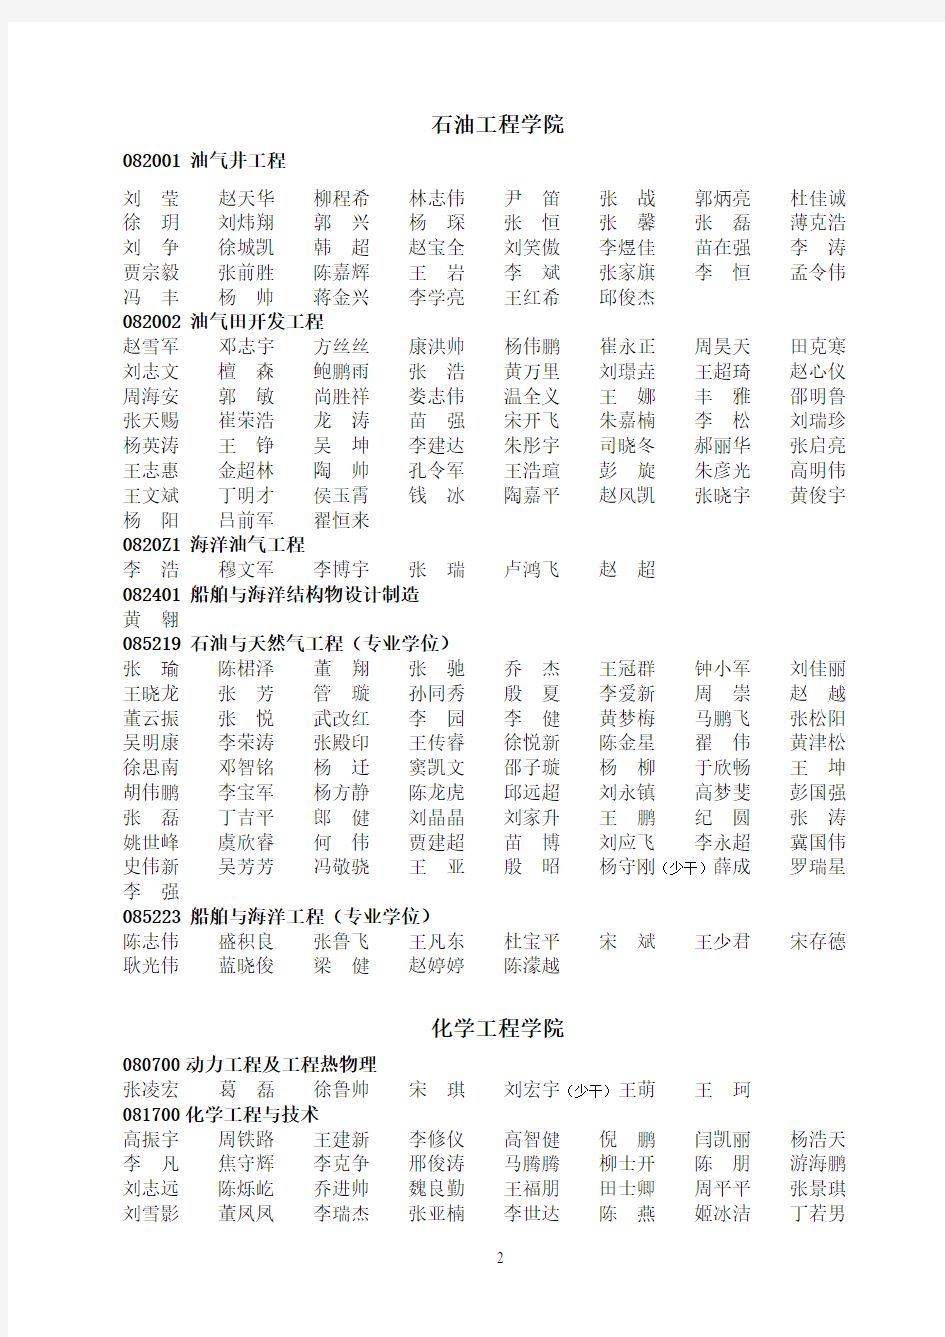 中国石油大学(华东)2015年硕士拟录取名单